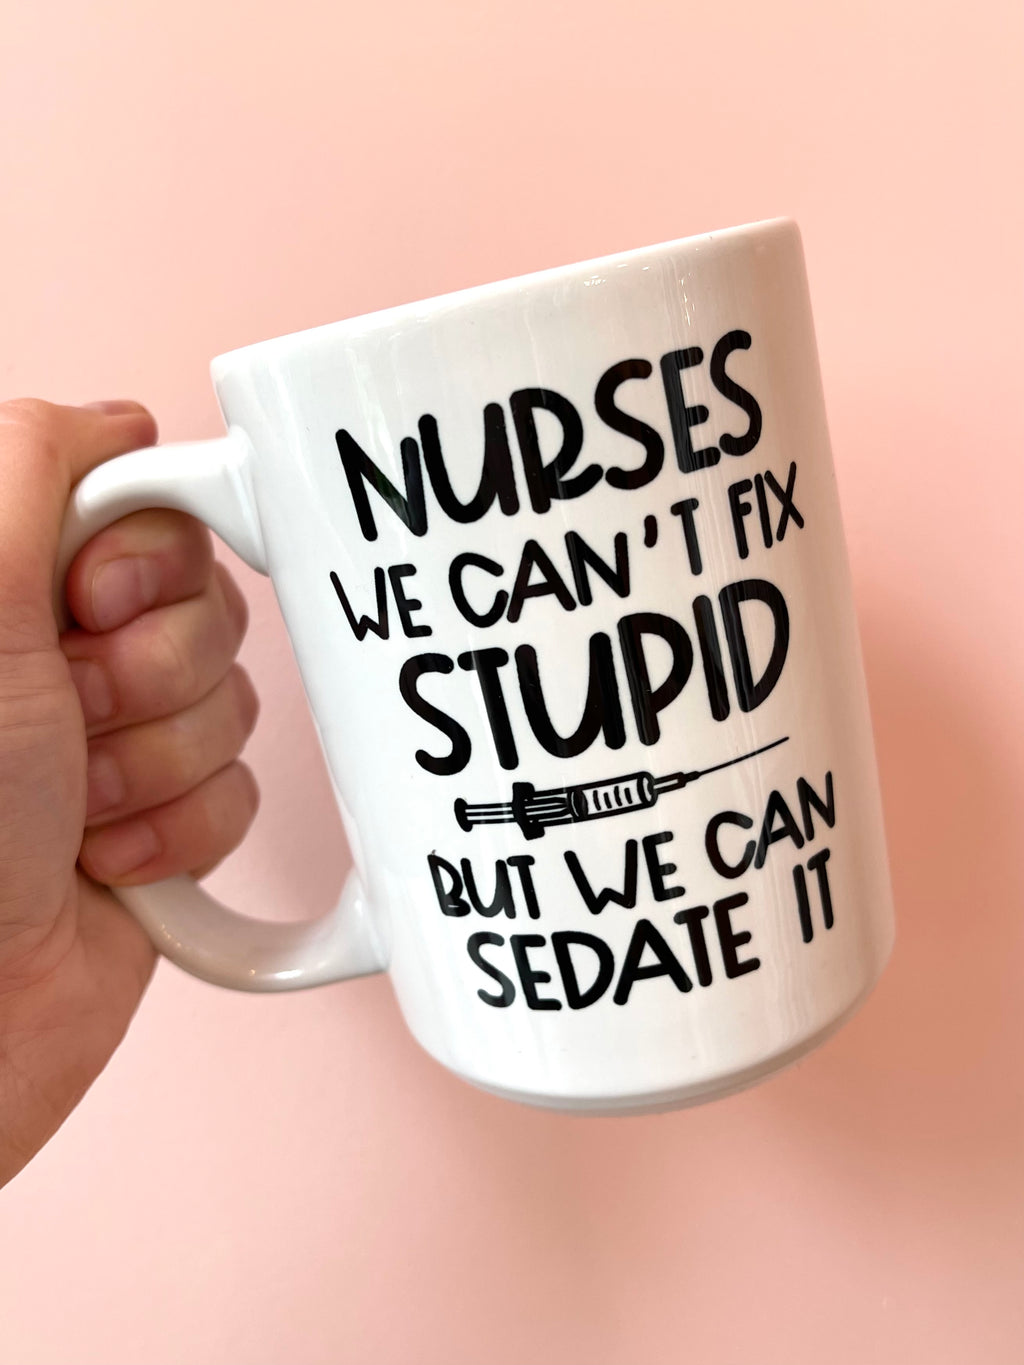 Nurse Can Sedate It Mug